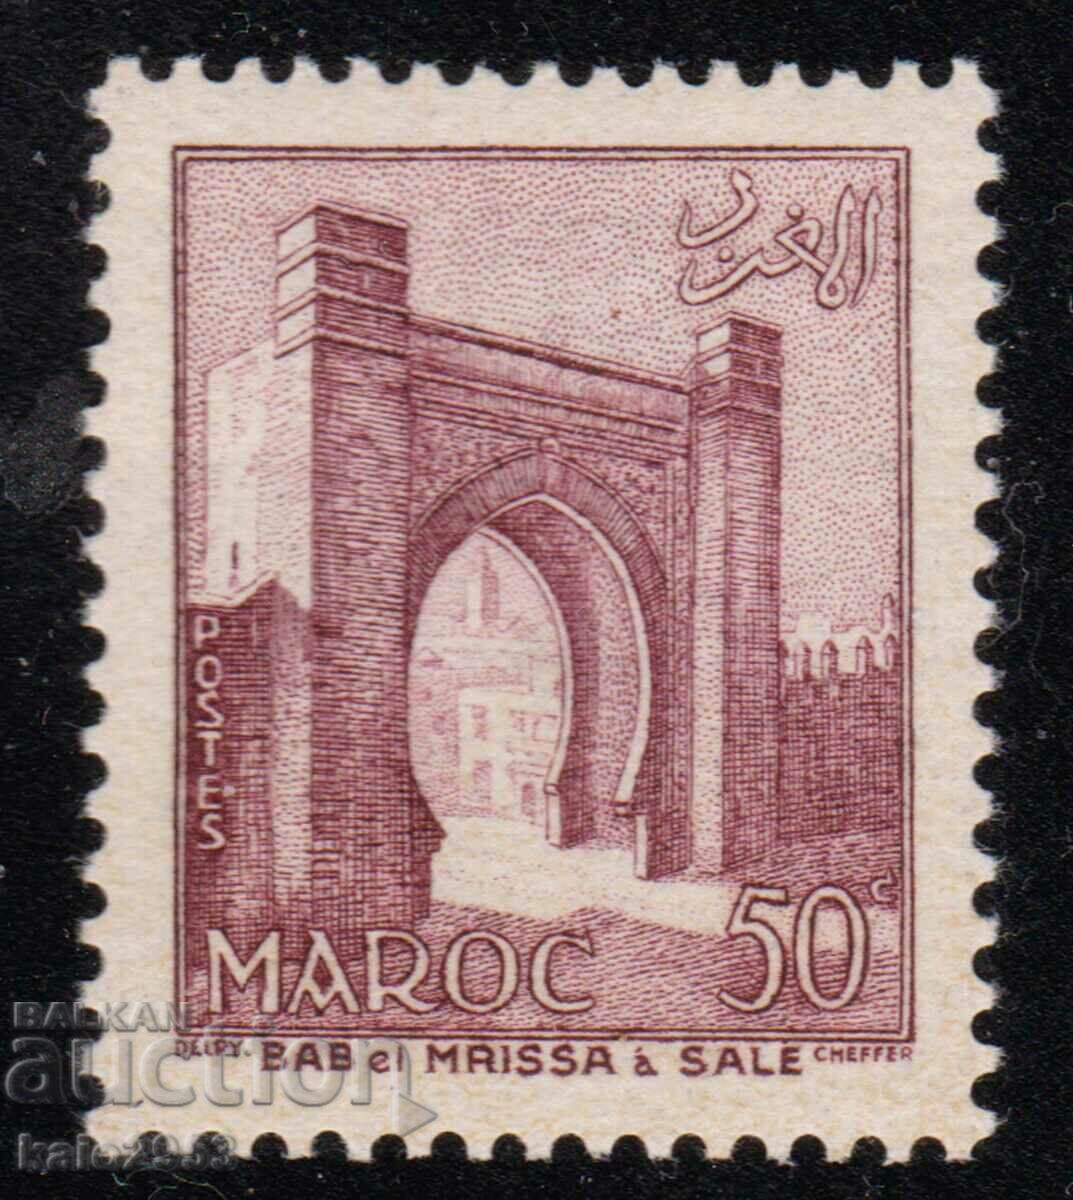 Maroc-1955-Poarta-obisnuita-Fes,MNH / II